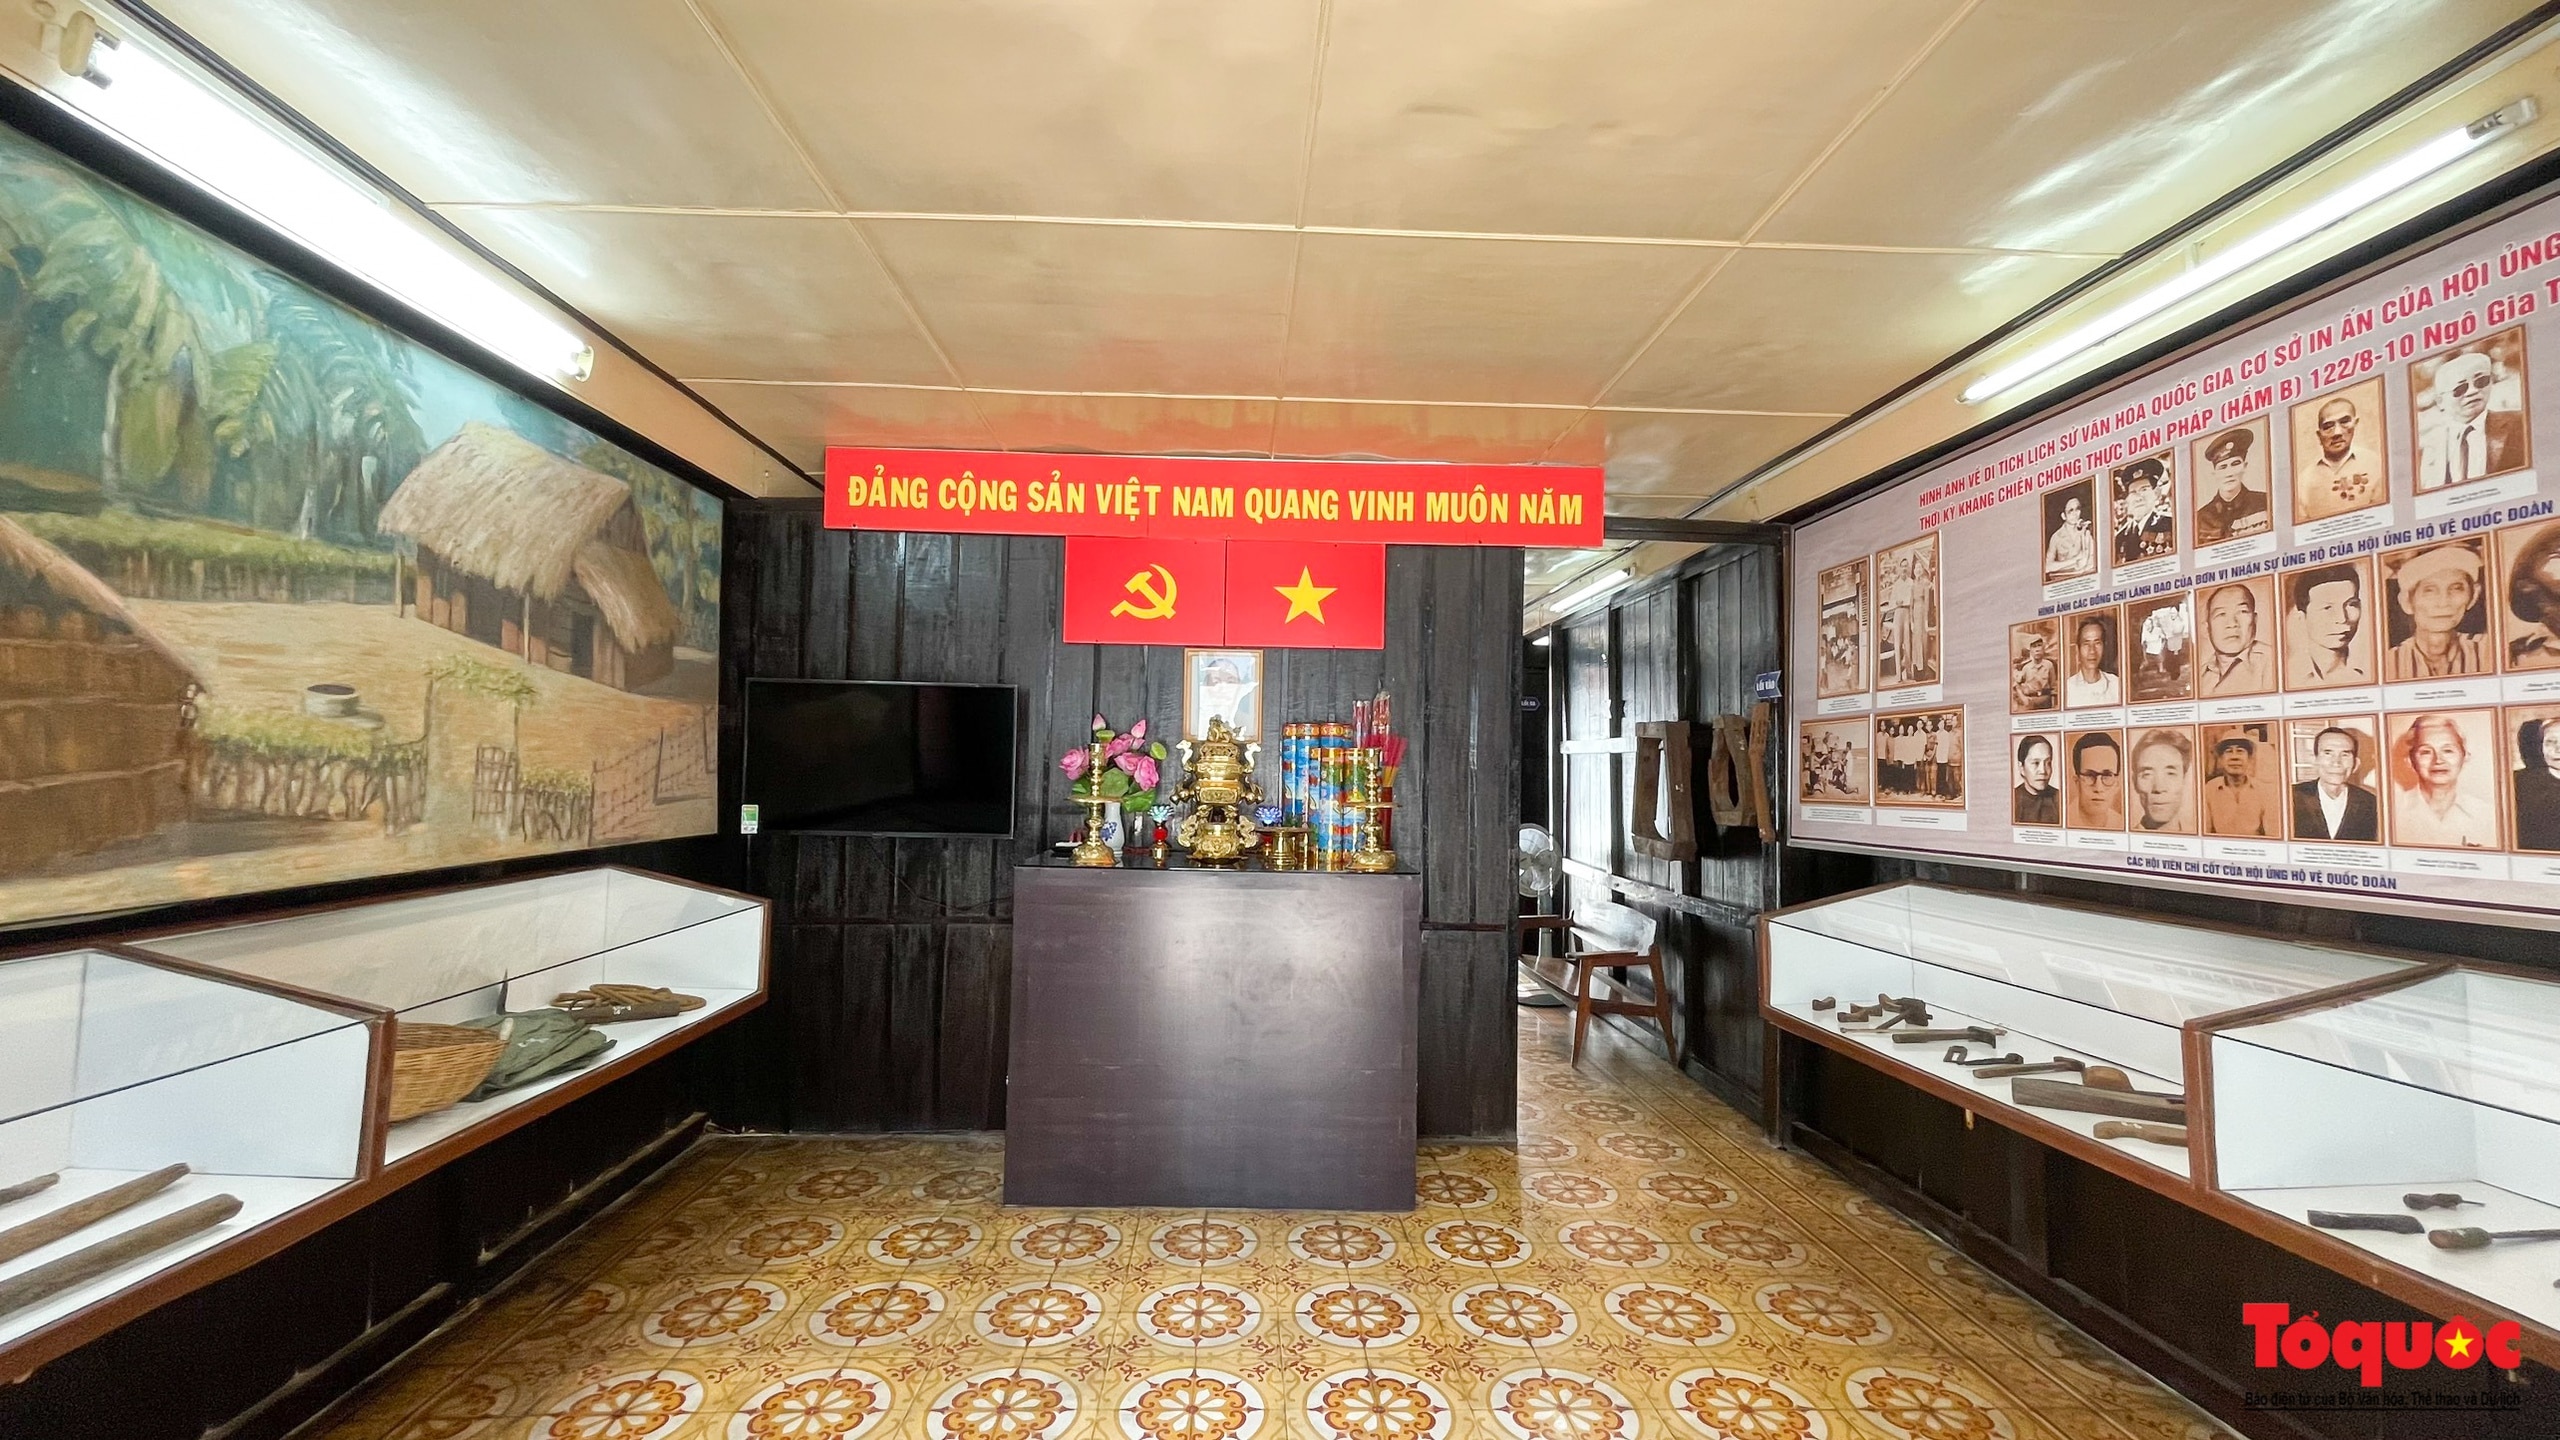 Bên trong căn hầm từng là xưởng in tuyệt mật giữa Sài Gòn - Ảnh 3.